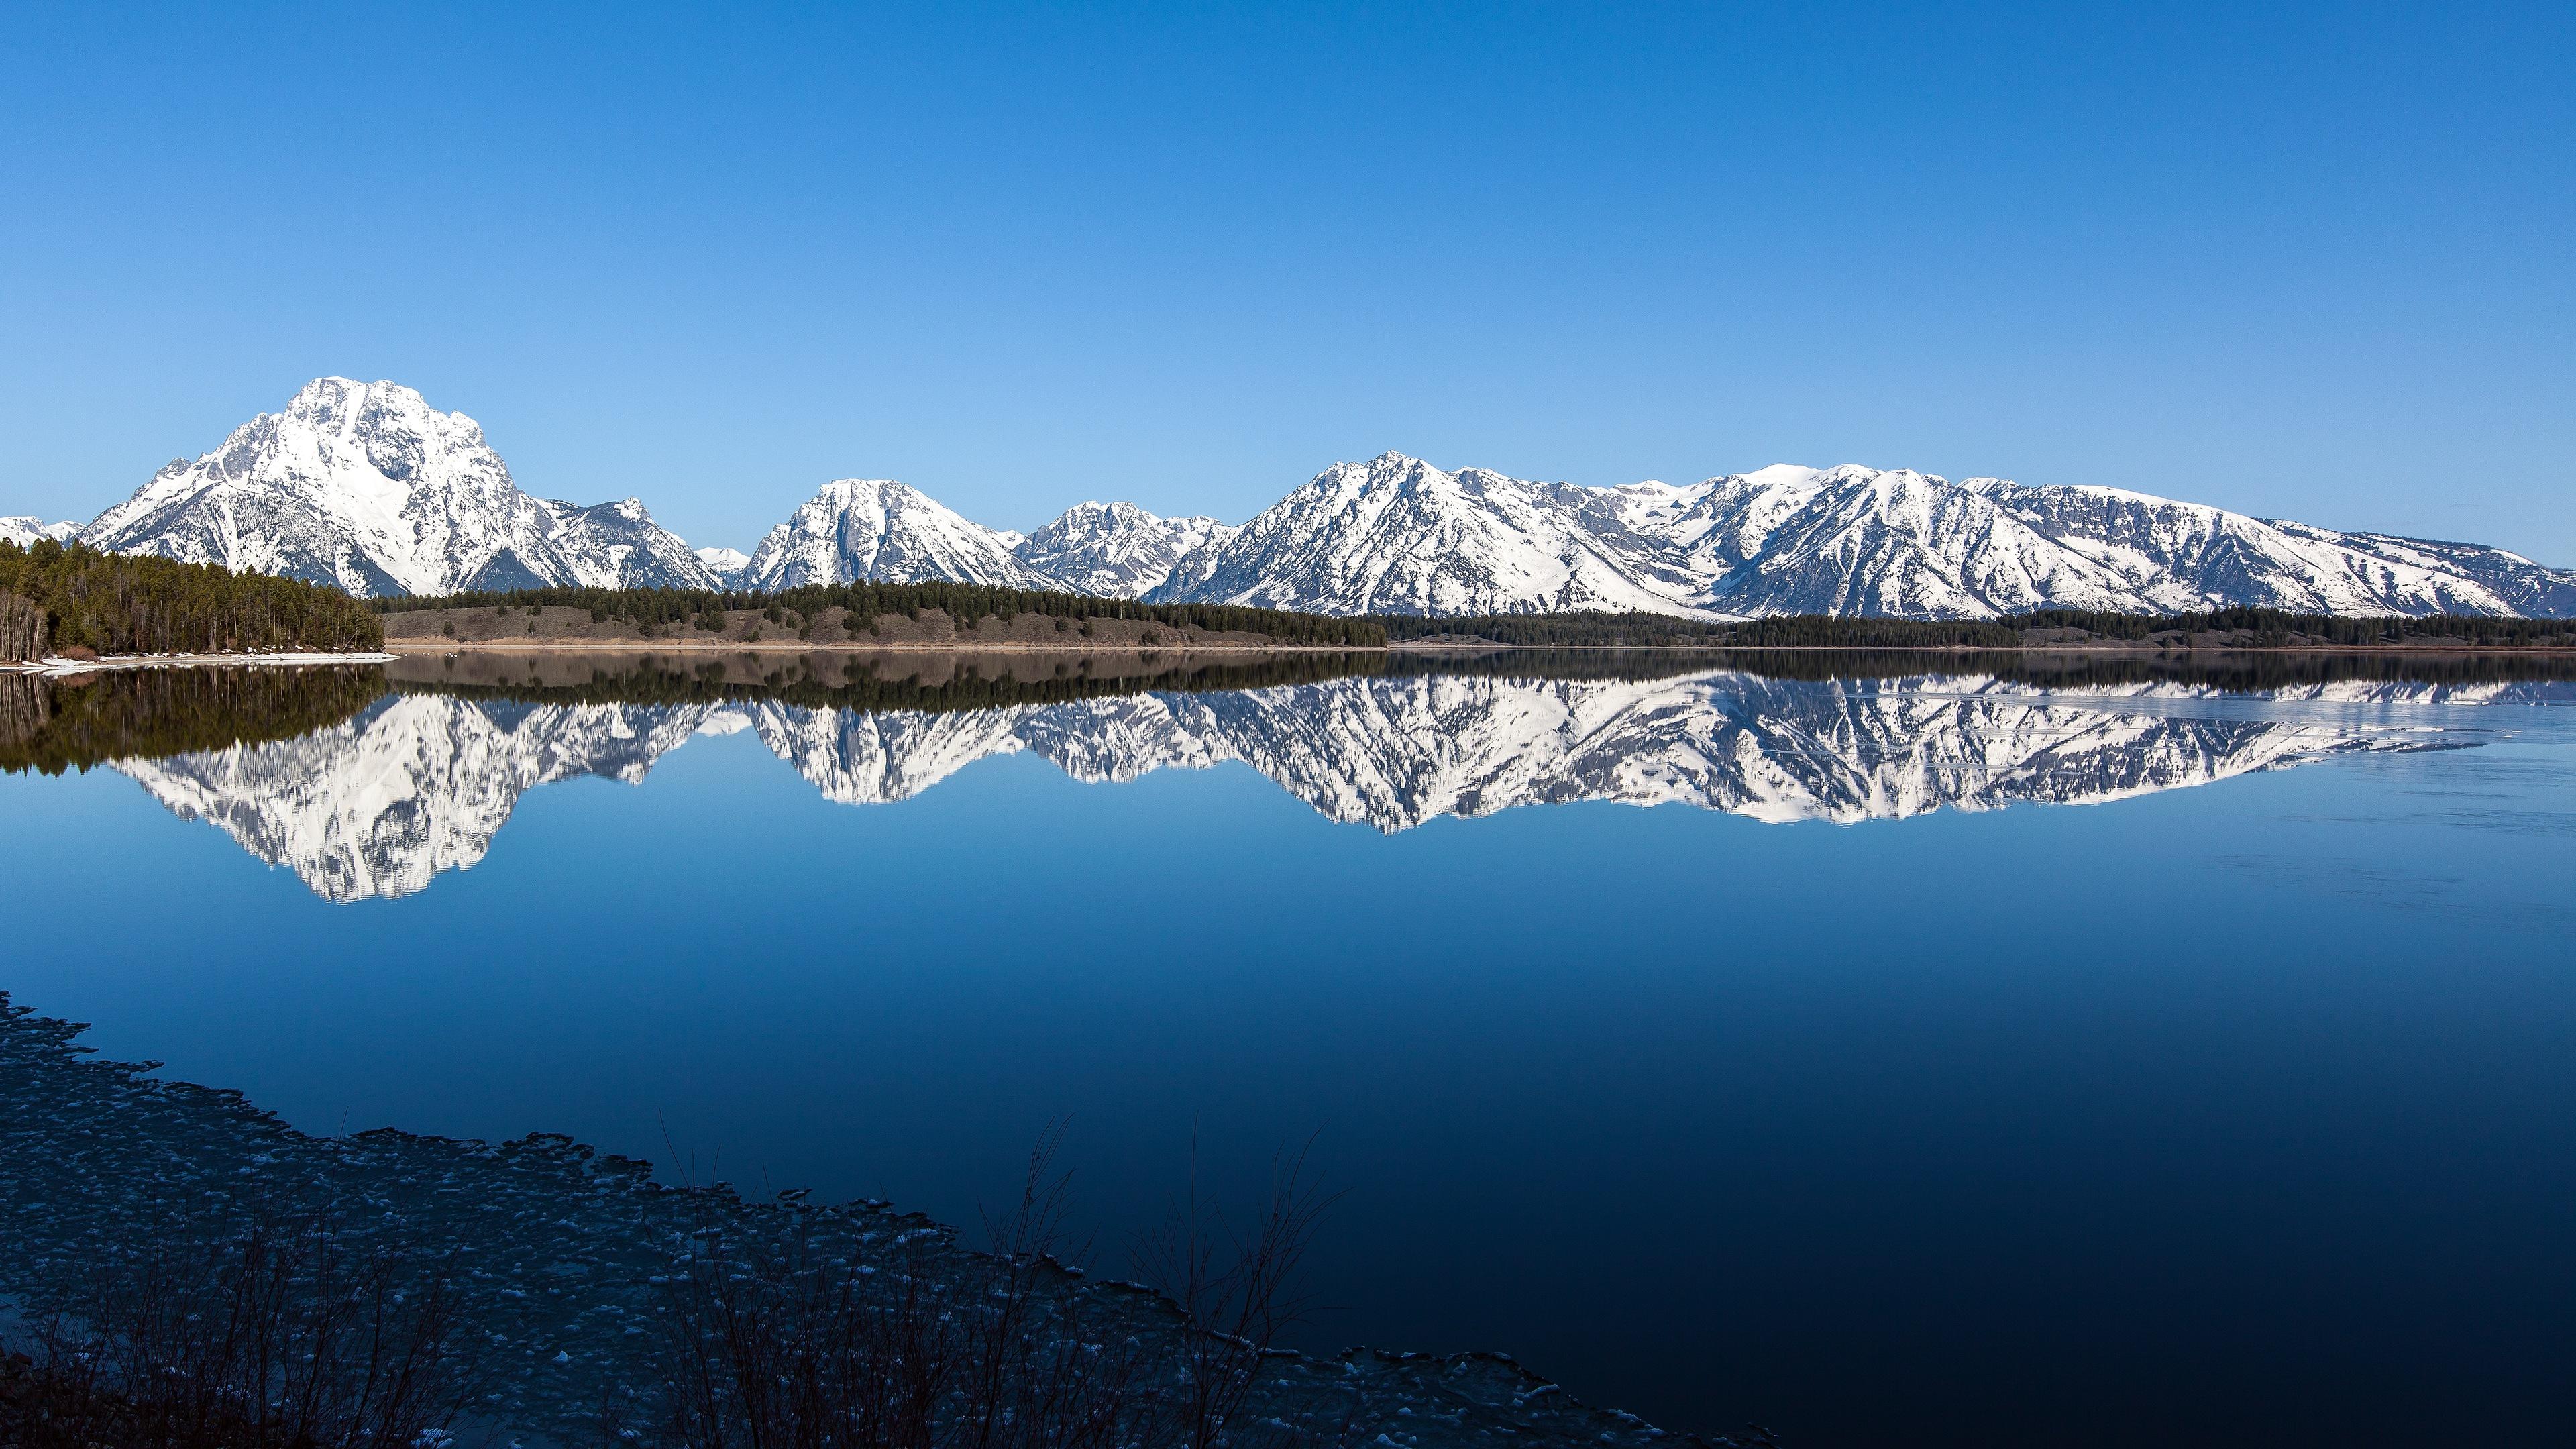 Snowy Mountain Range Lake Reflection 4K Ultra HD Desktop Wallpaper